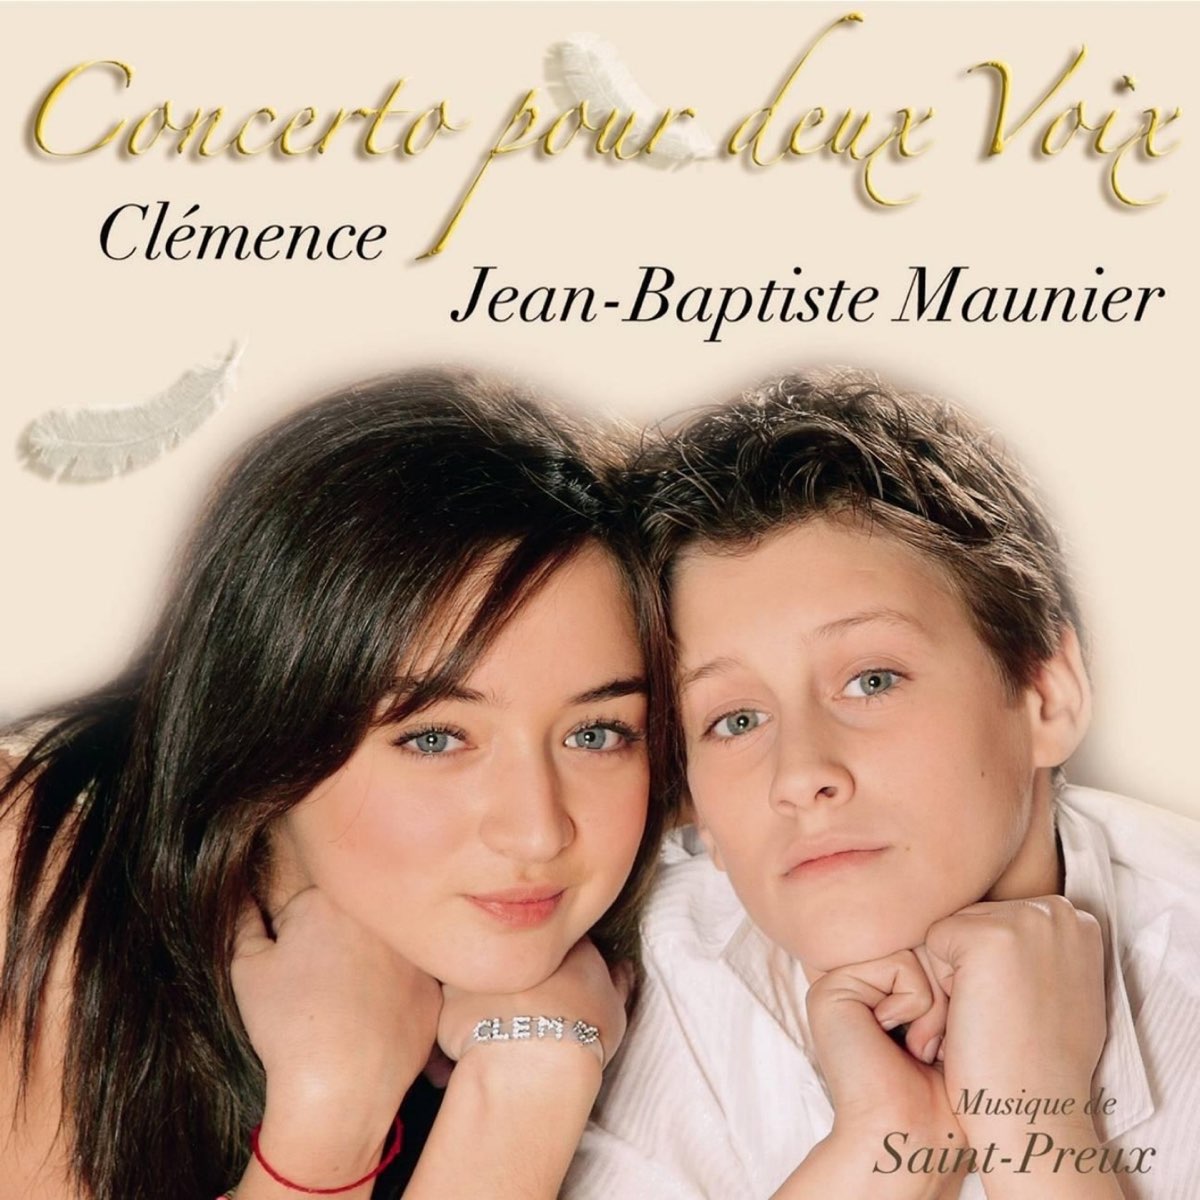 Concerto pour deux voix - Single - Album by Clémence & Jean-Baptiste Maunier  - Apple Music